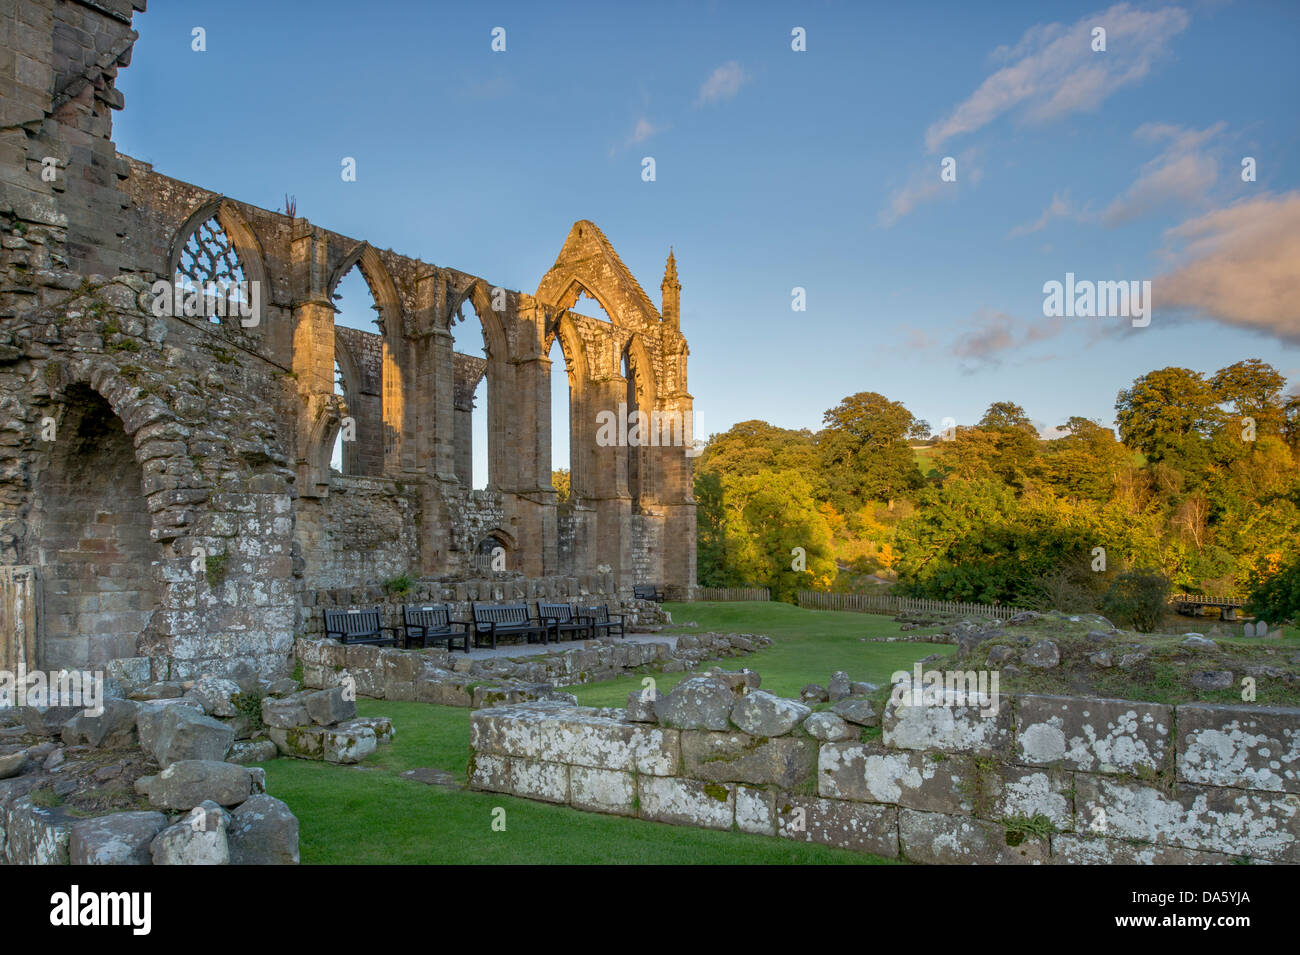 Sotto il profondo blu del cielo, vista del soleggiato, antico, pittoresche rovine monastiche di Bolton Abbey (priorato) nella pittoresca campagna - Yorkshire Dales, England, Regno Unito Foto Stock